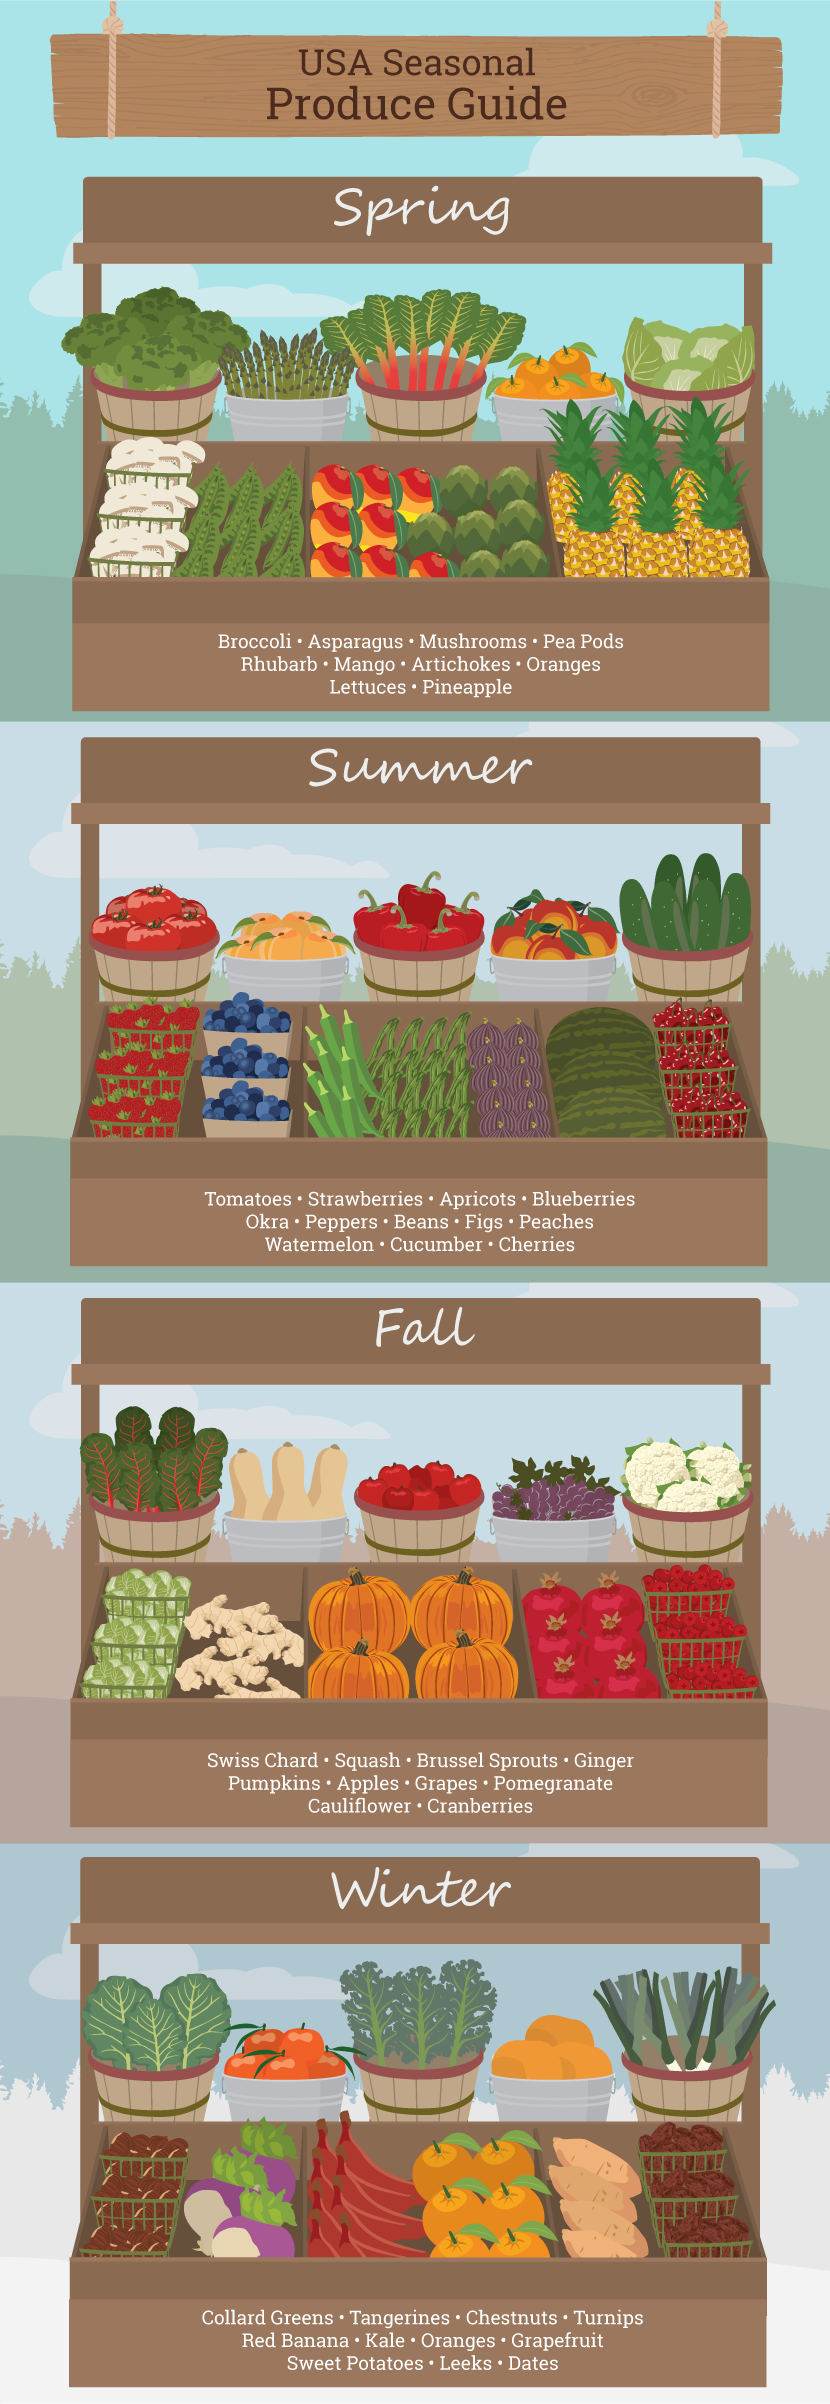 Farmers Market Guide: What's in Season in your Region